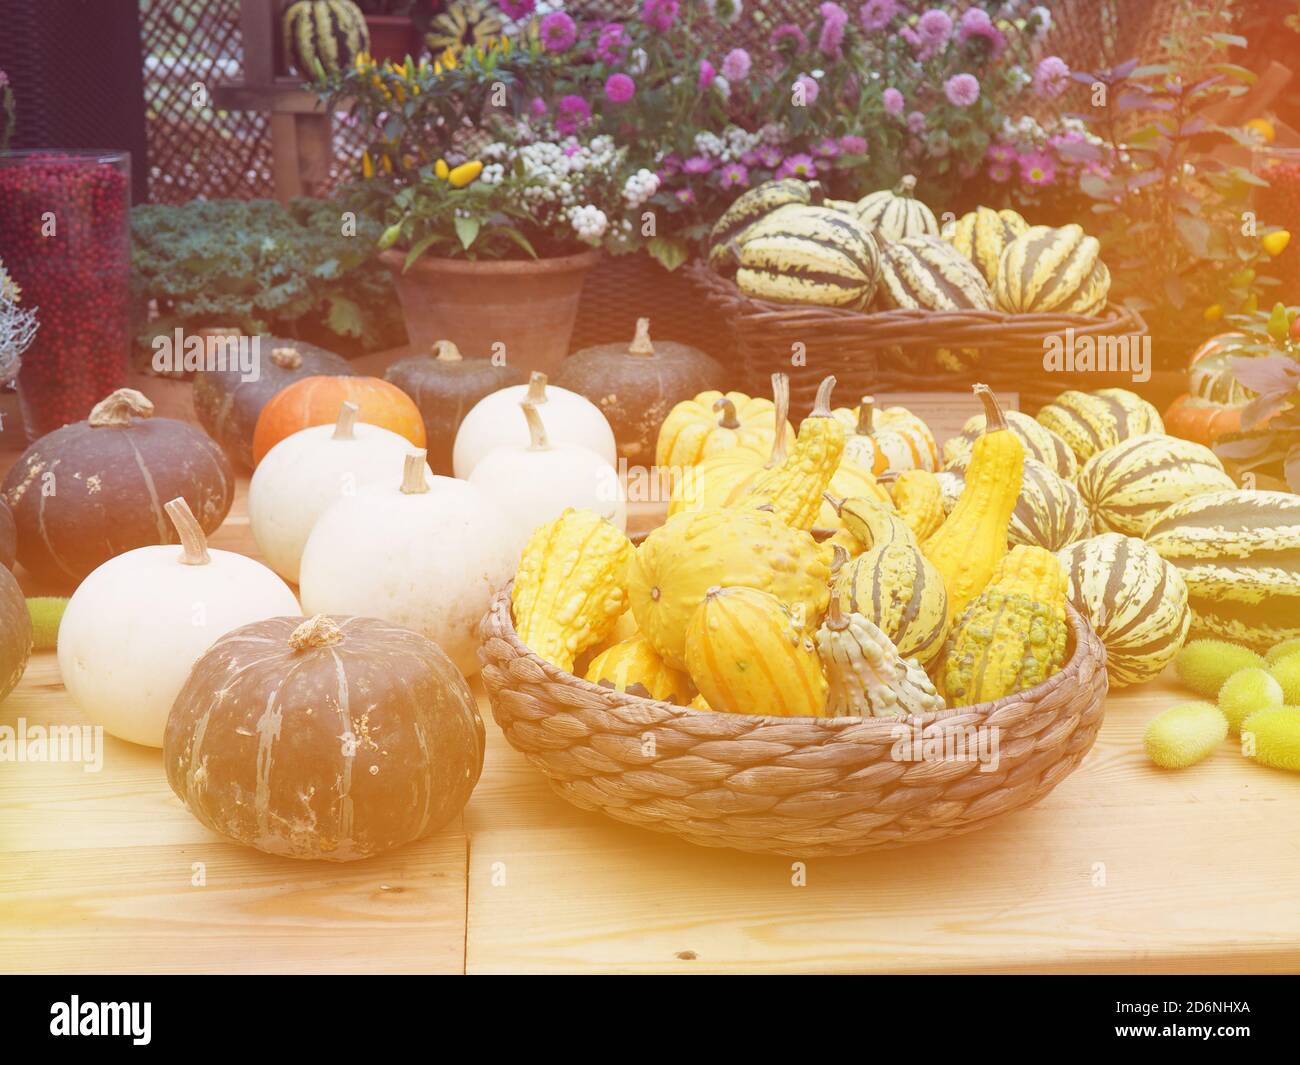 la récolte, la citrouille d'automne différent style de vie. Banque D'Images